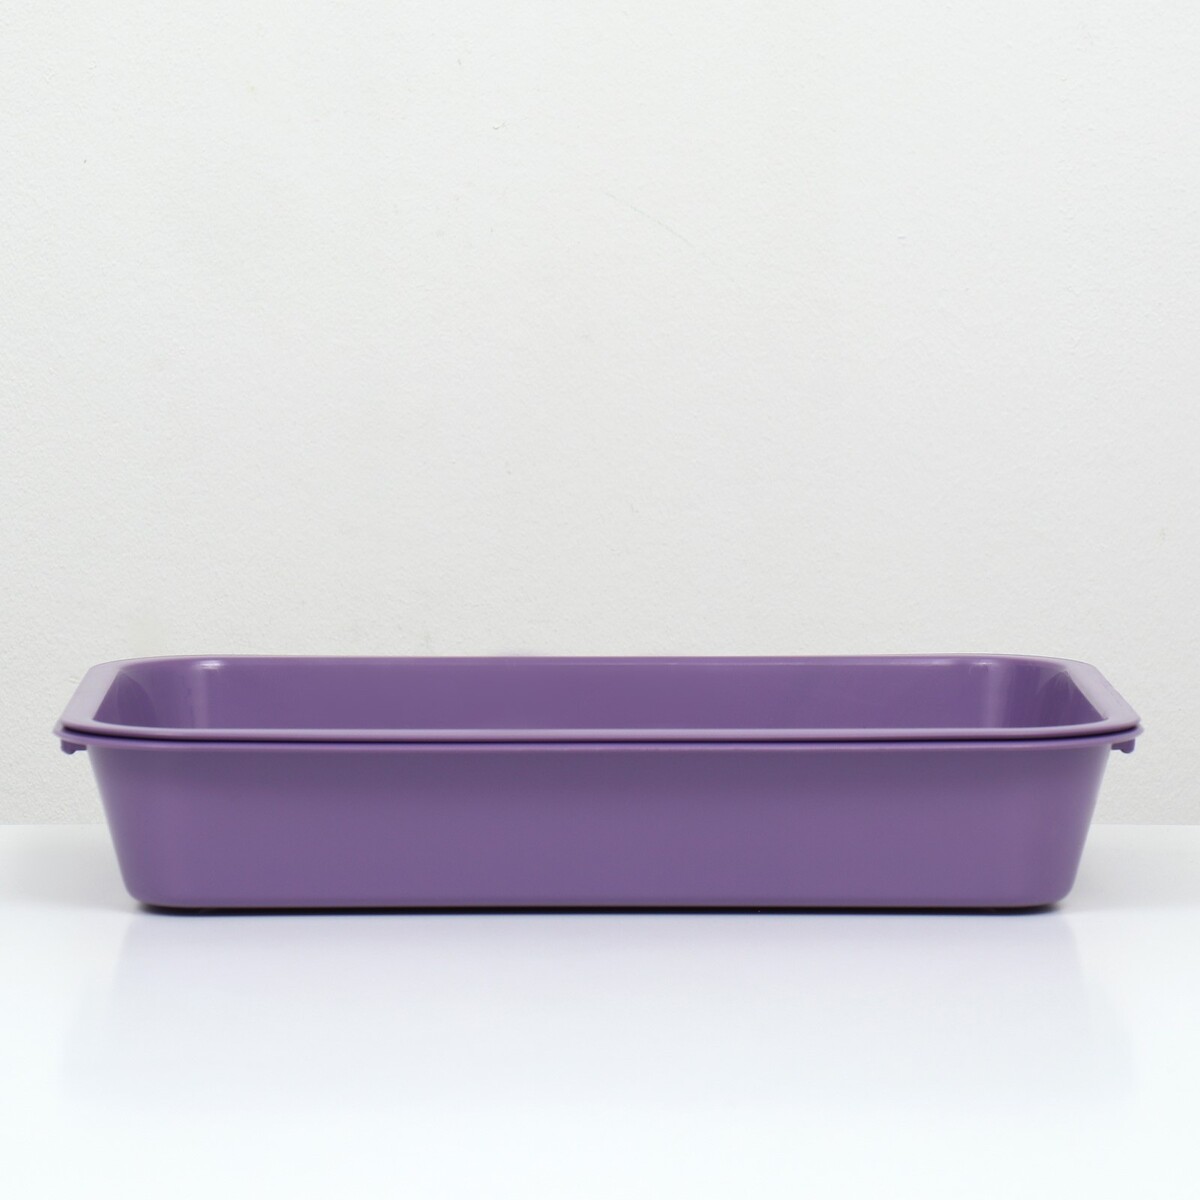 фото Туалет средний с сеткой 36 х 26 х 6,5 см, фиолетовый, no brand